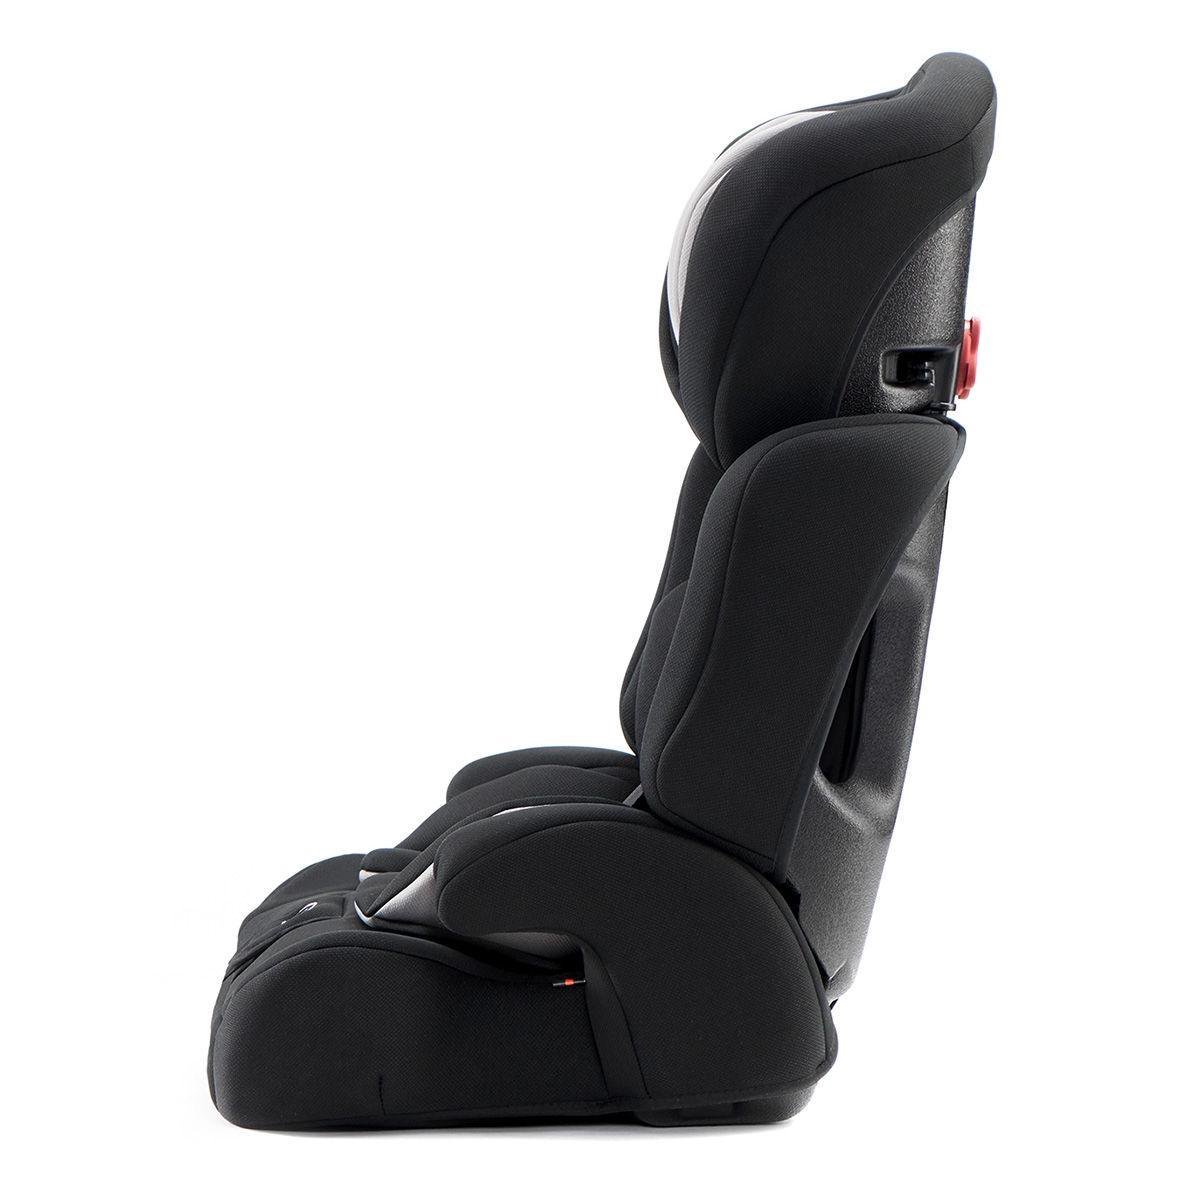 Kinderkraft Autostoel Comfort Up - - Zwart